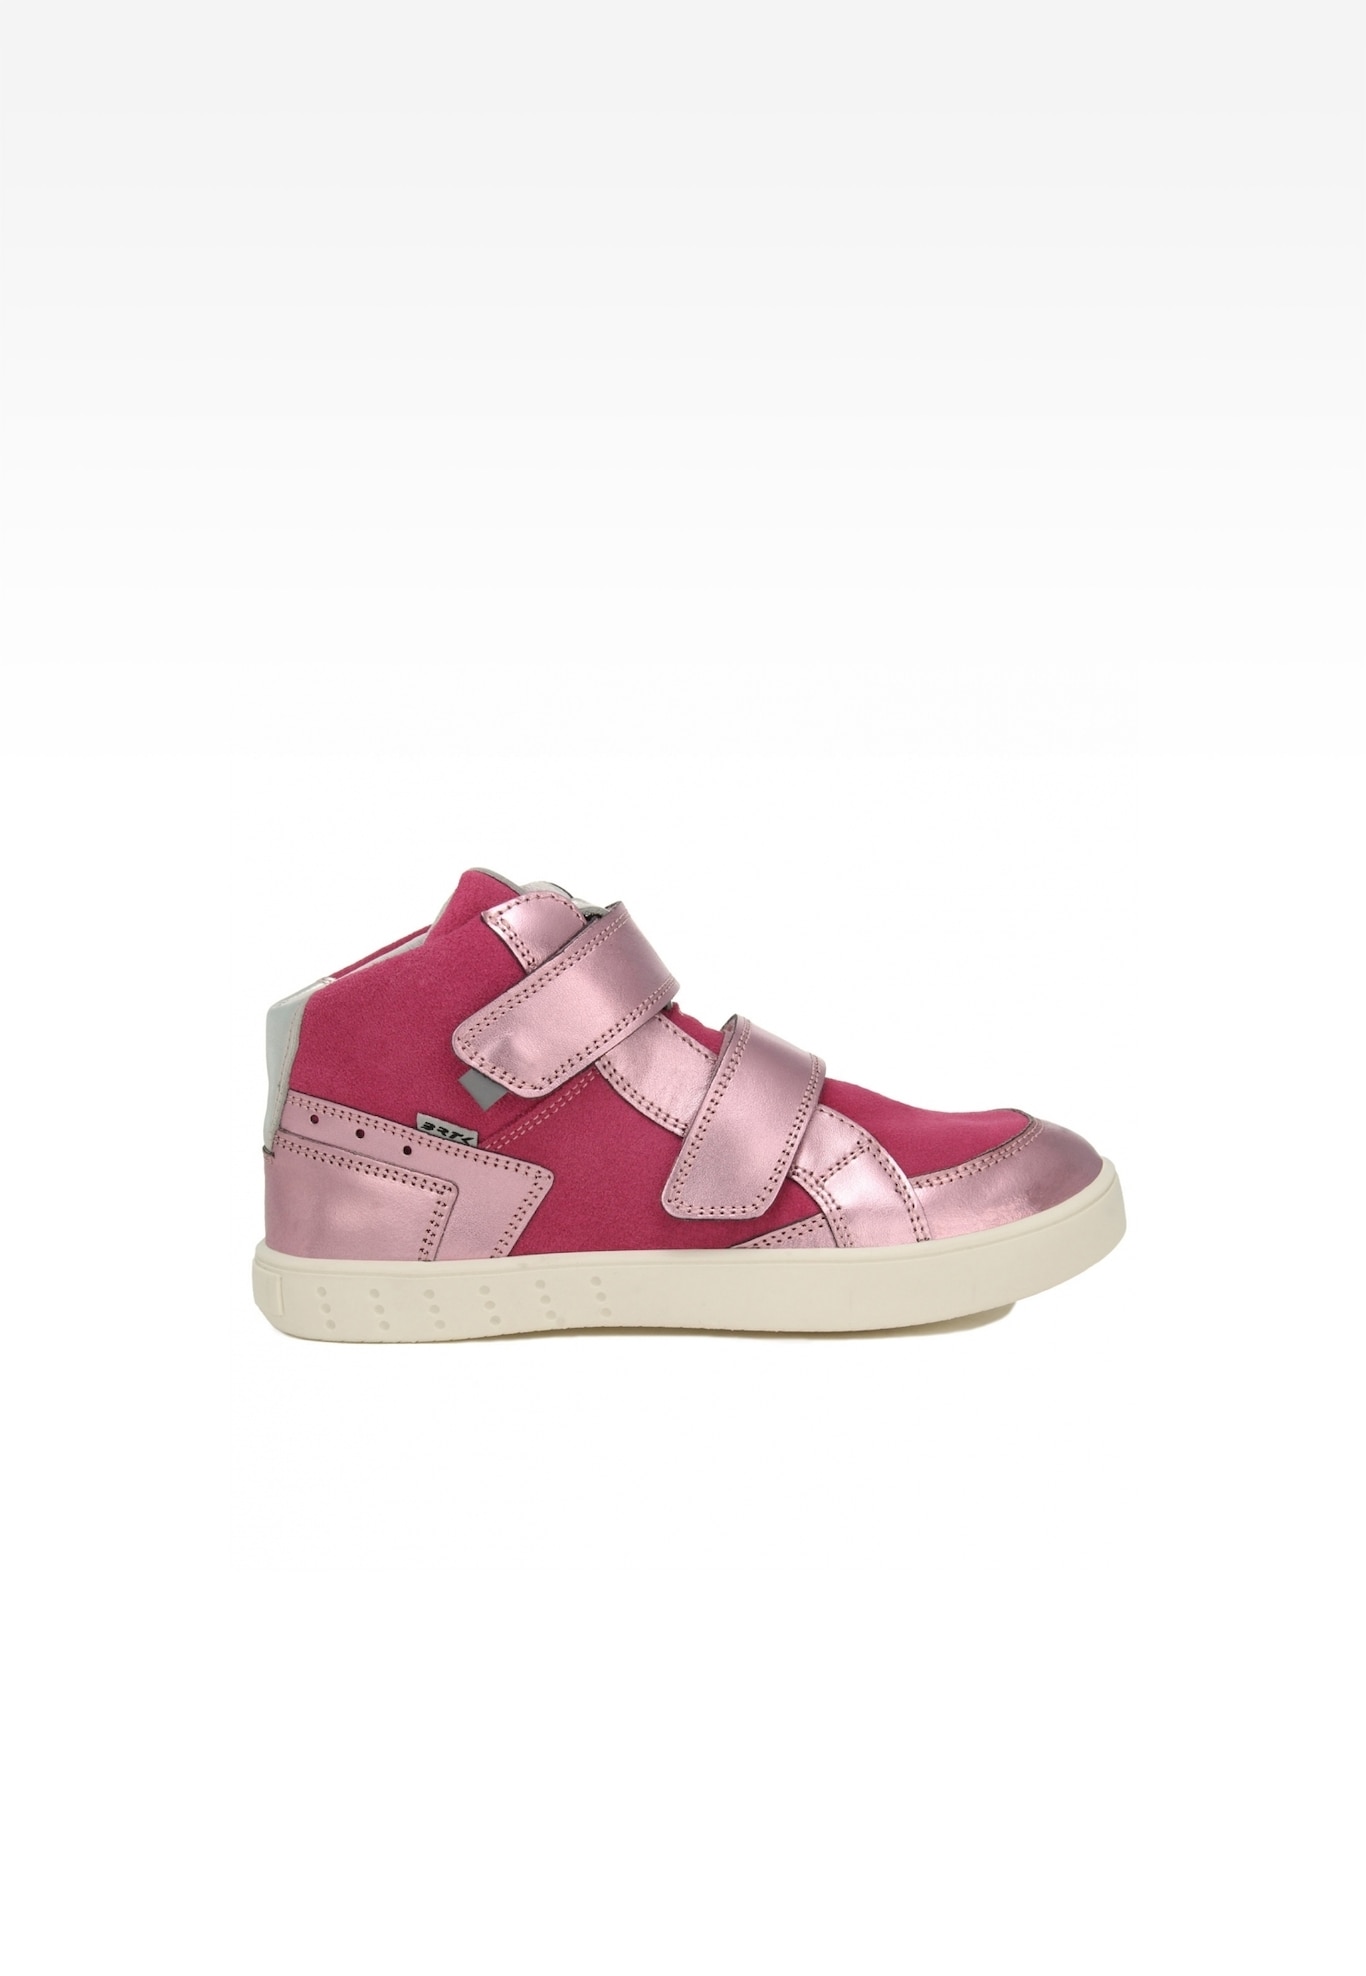 Sneakers BARTEK 027414-039 II, dla dziewcząt, różowy